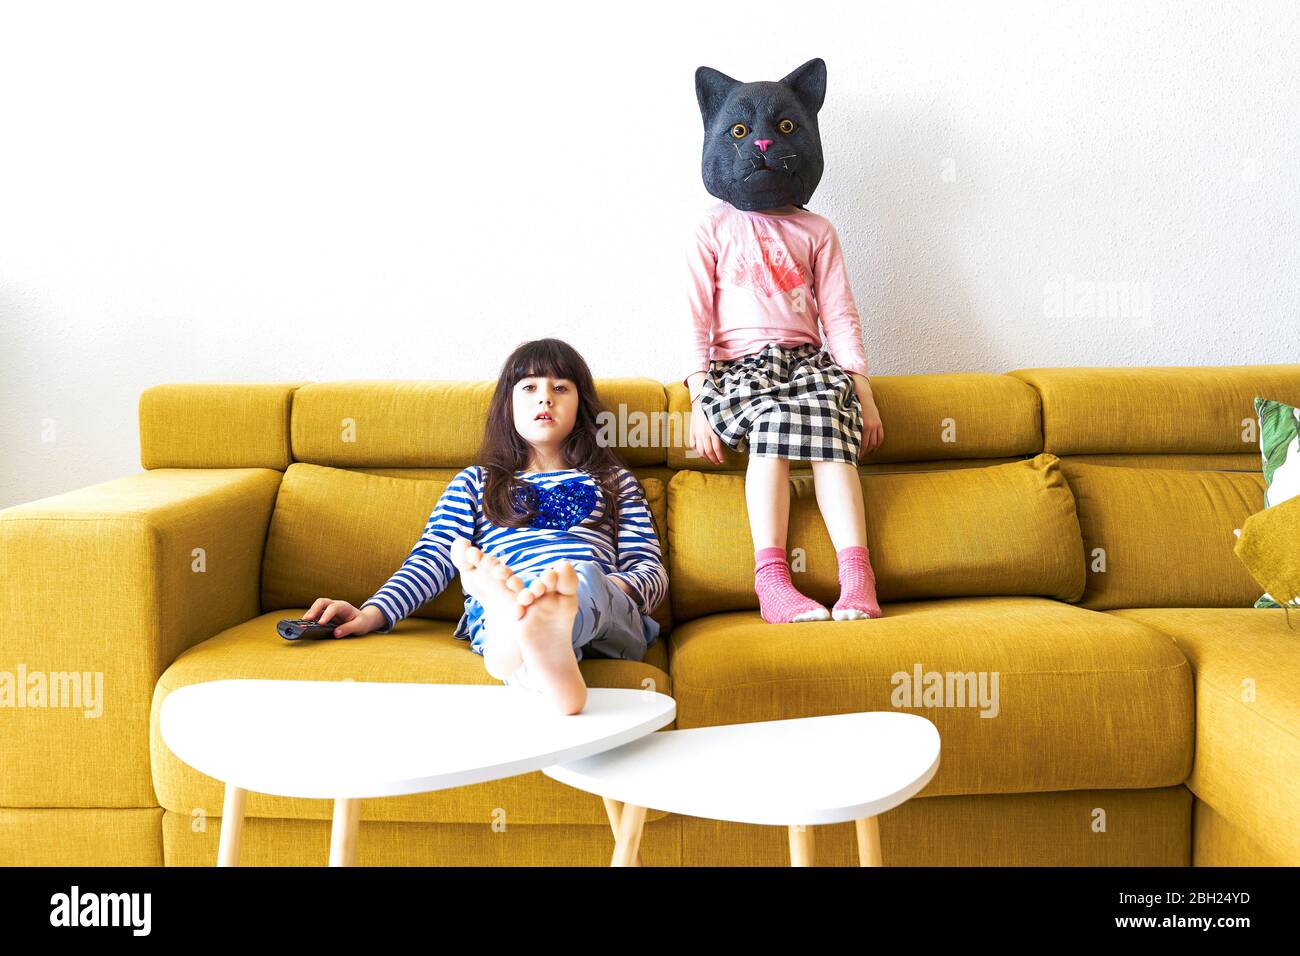 Deux filles ennuyeuses assises sur un canapé, regardant la télévision, une portant un masque de chat Banque D'Images